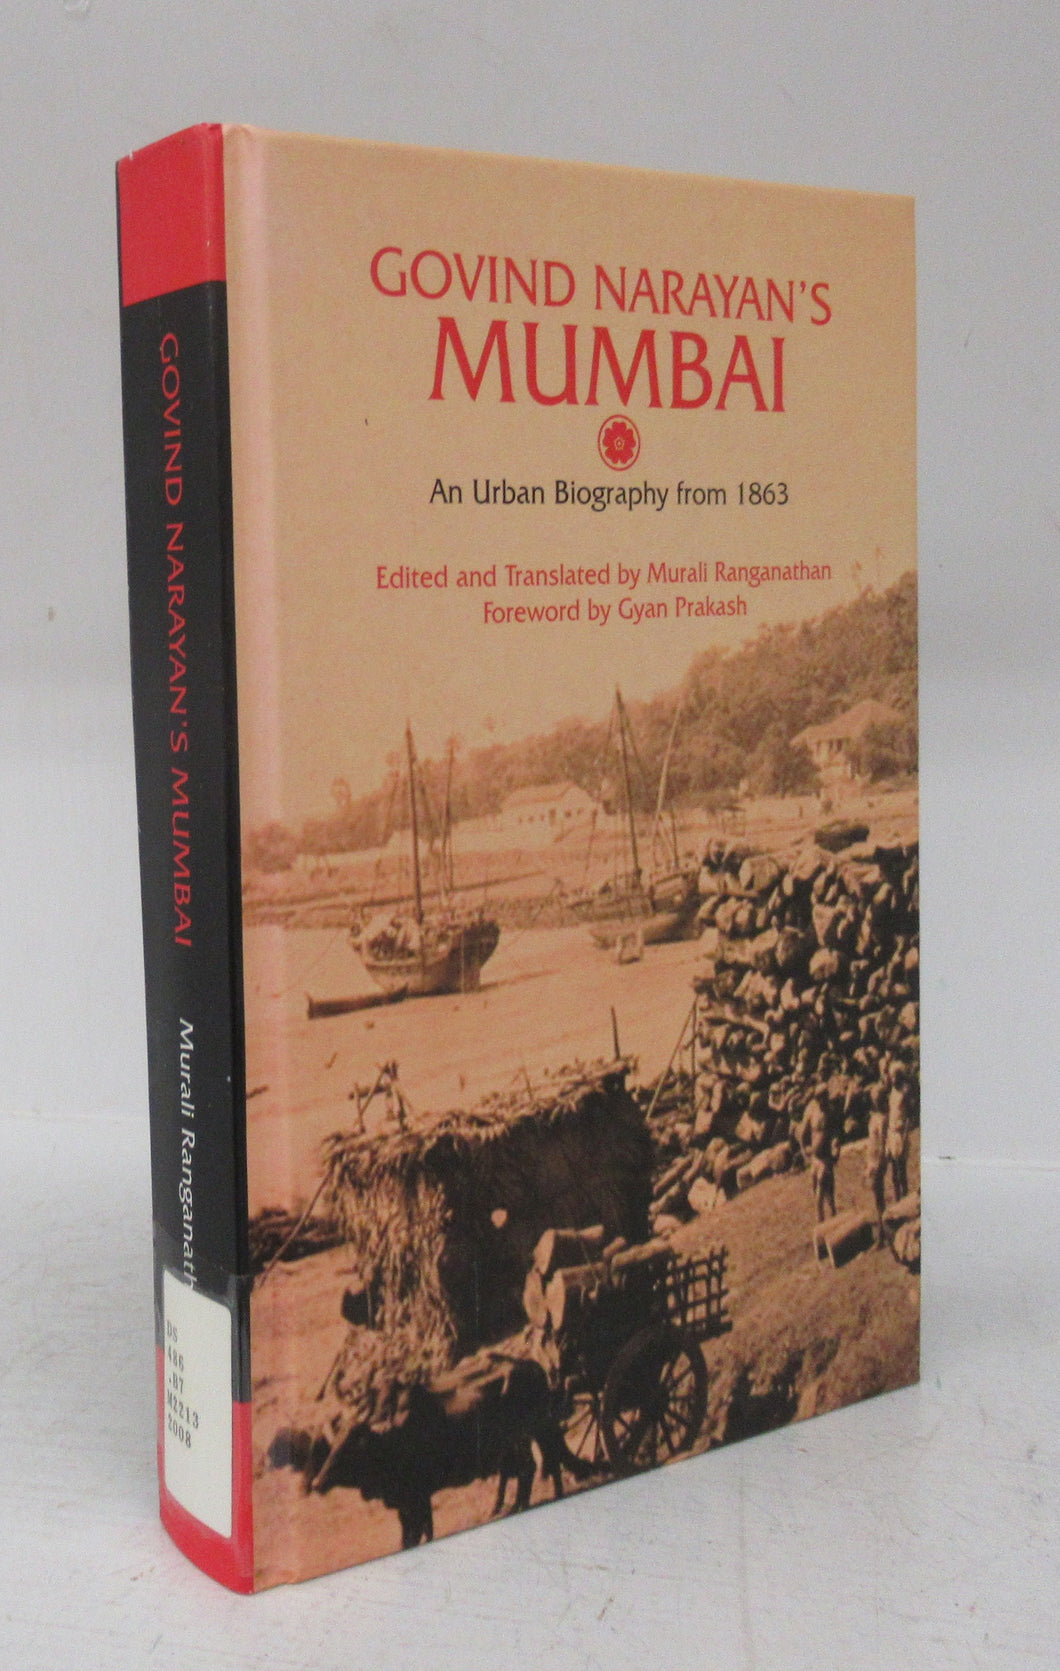 Govind Narayan's Mumbai: An Urban Biography from 1863